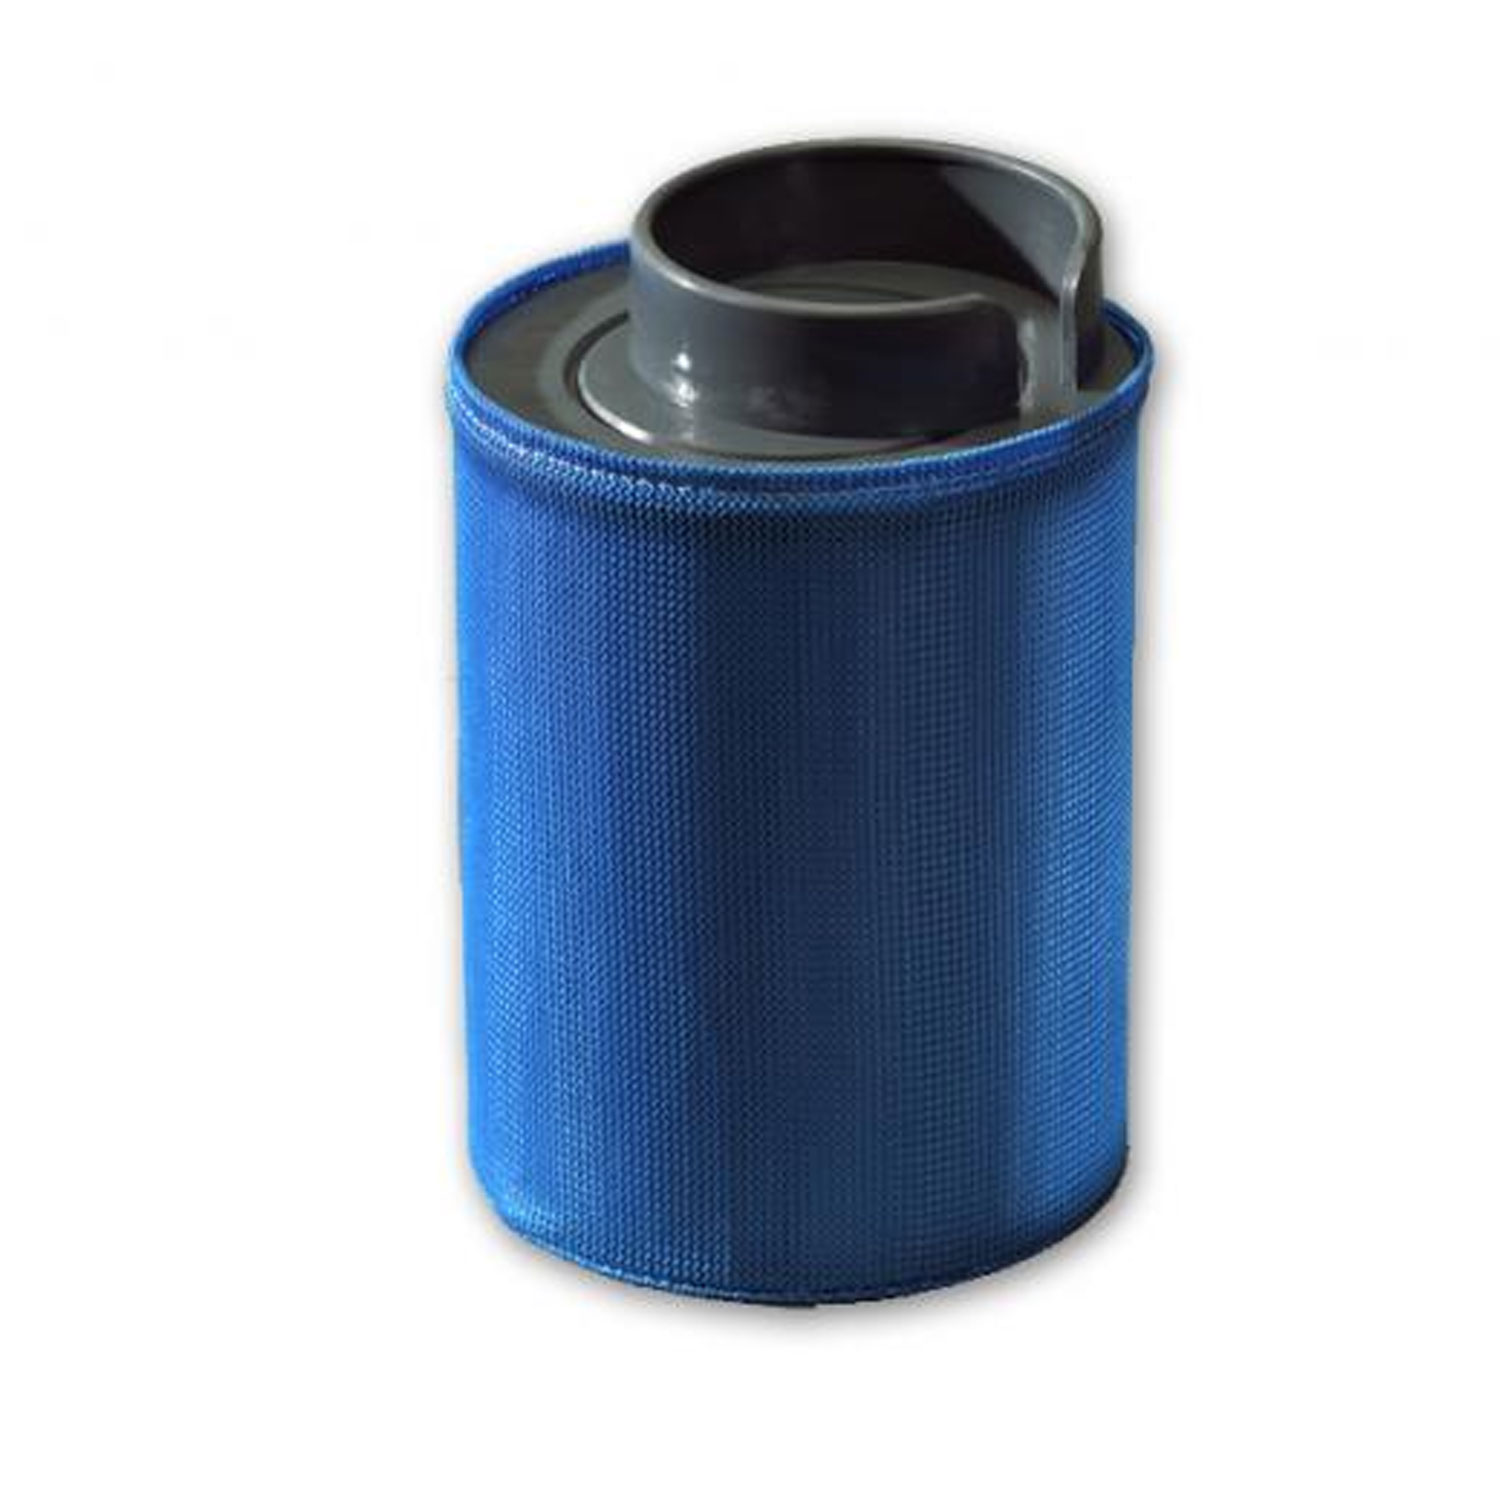 Filterüberzug für Softub Whirlpools in blau oder pearl